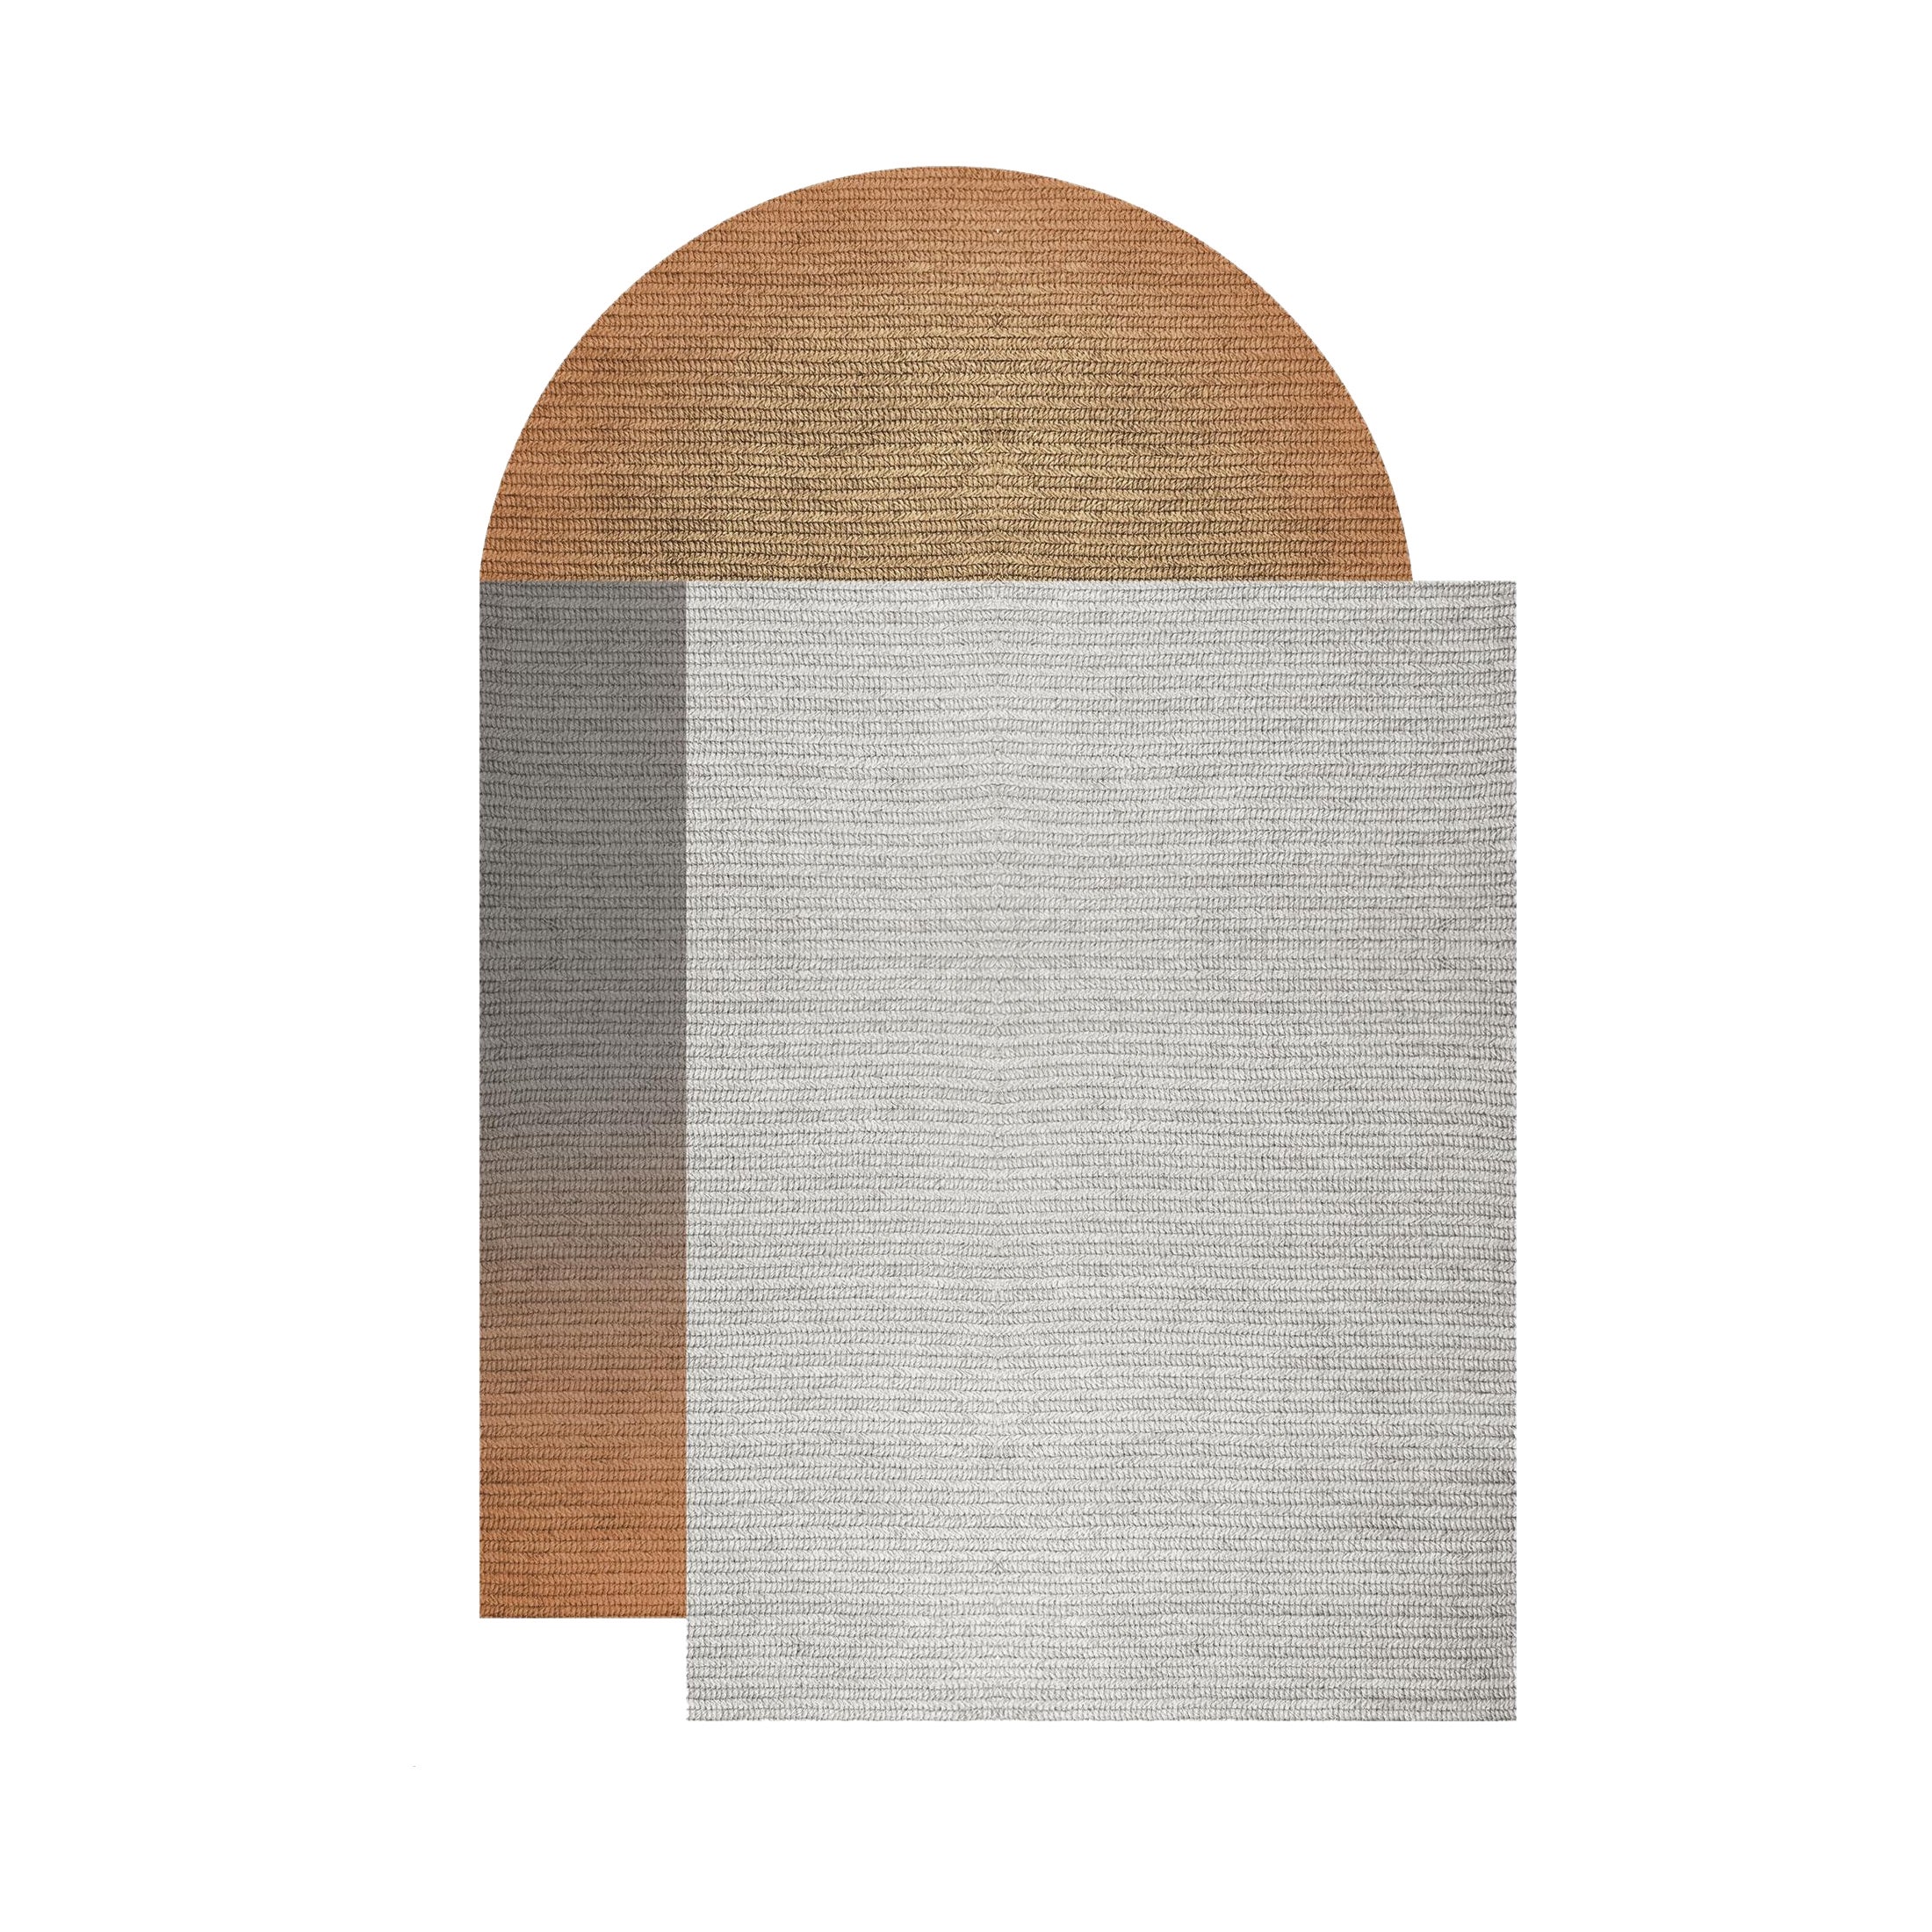 Tapis Fade en Abaca, couleur acajou, 160 x 240 cm, de Claire Vos pour Musett Design